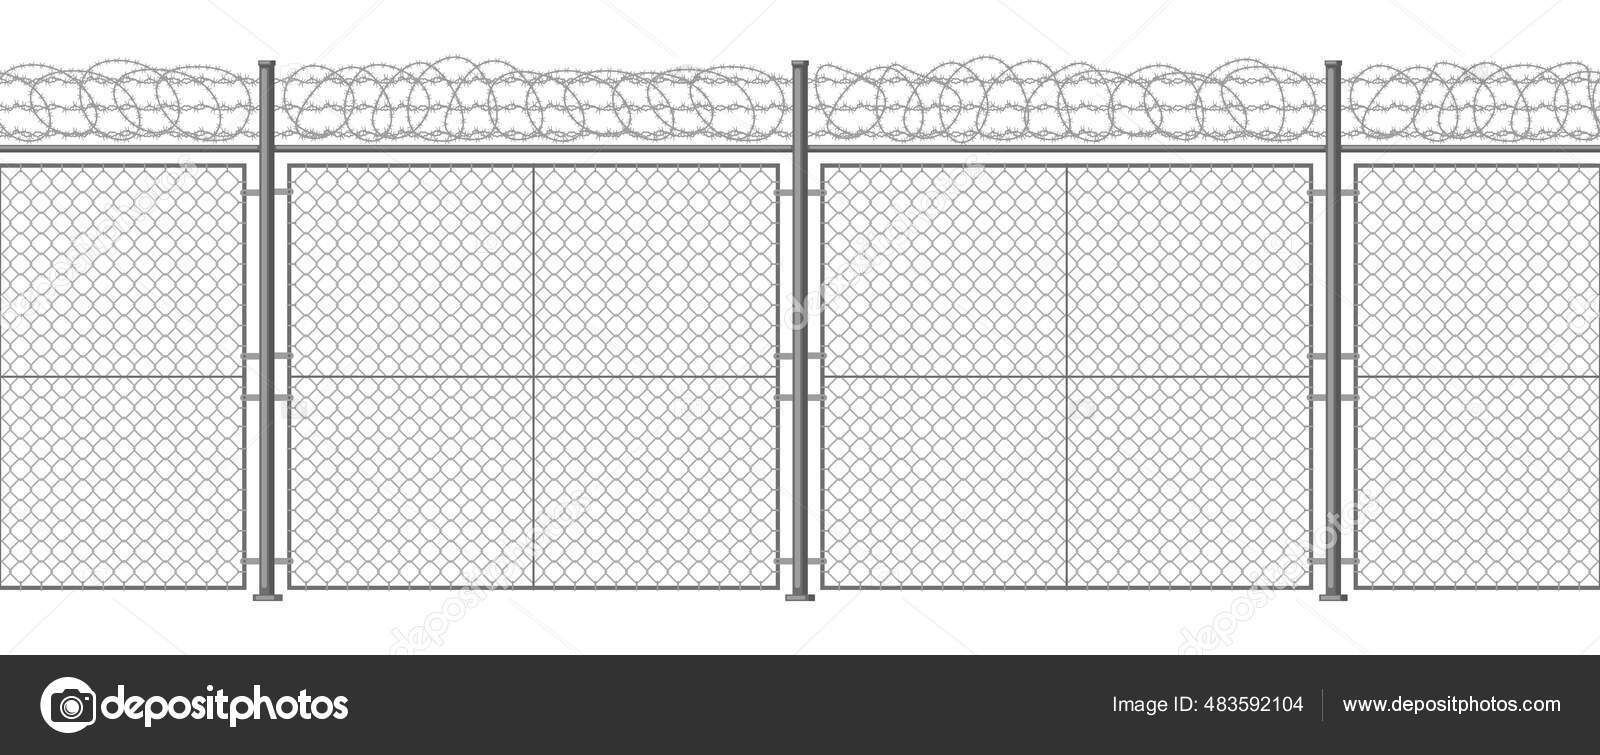 filo spinato metallico con punte affilate per barriera protettiva,  recinzioni industriali e agricole. 5459885 Arte vettoriale a Vecteezy